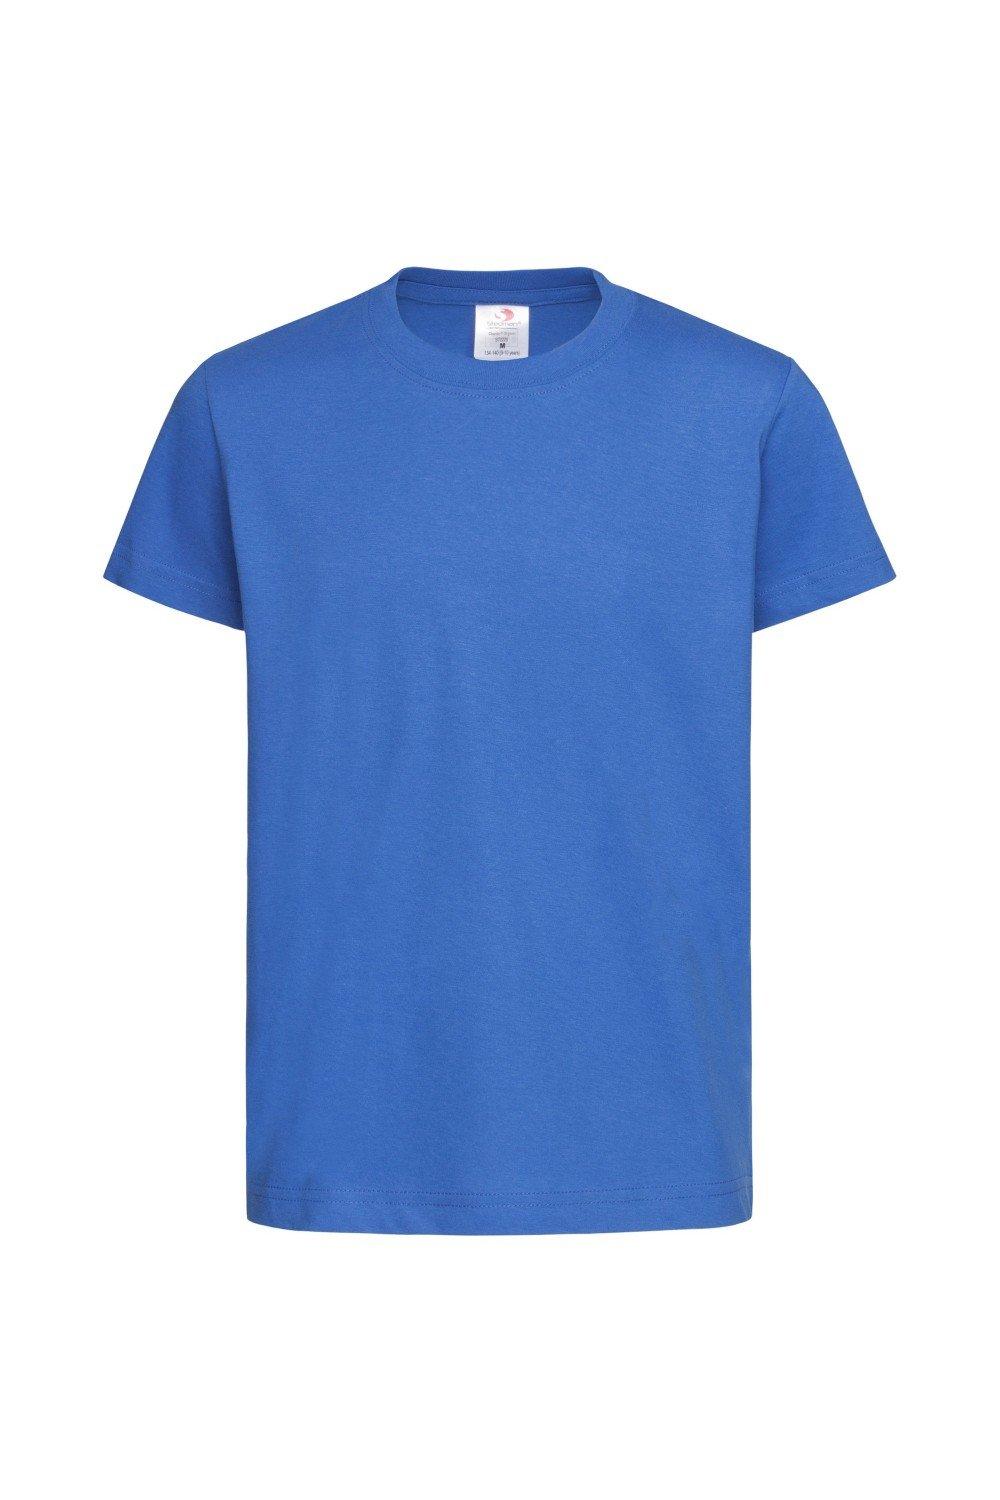 Классическая органическая футболка Stedman, синий